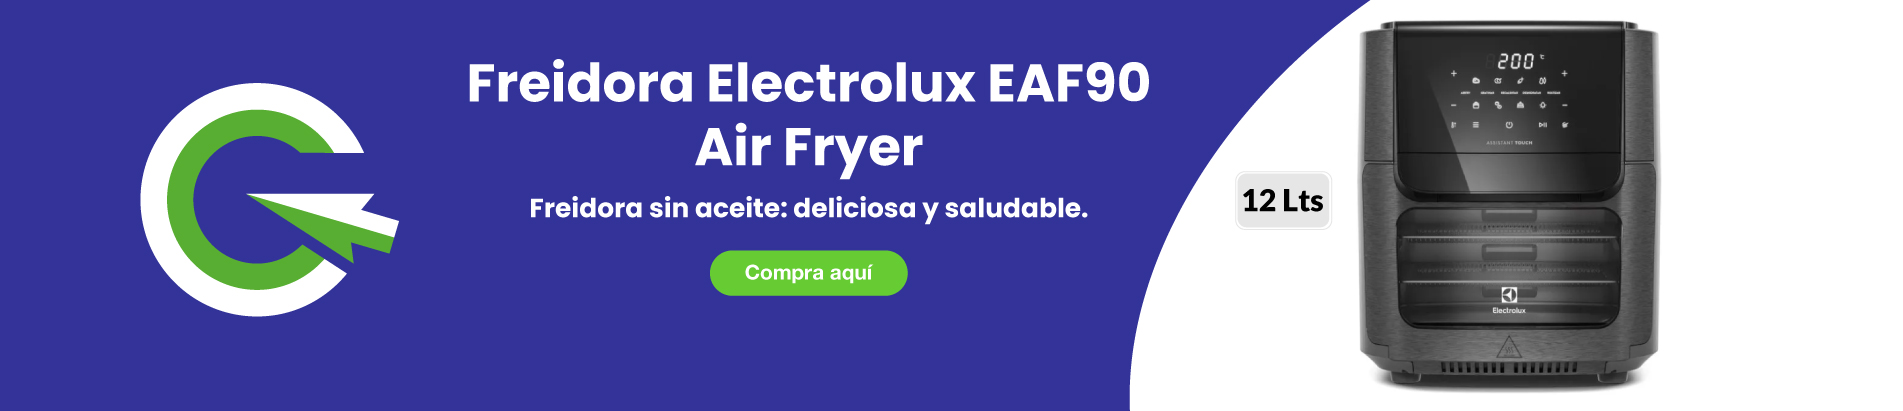 freidora-electrolux-eaf90-air-fryer-12-lts-1700w